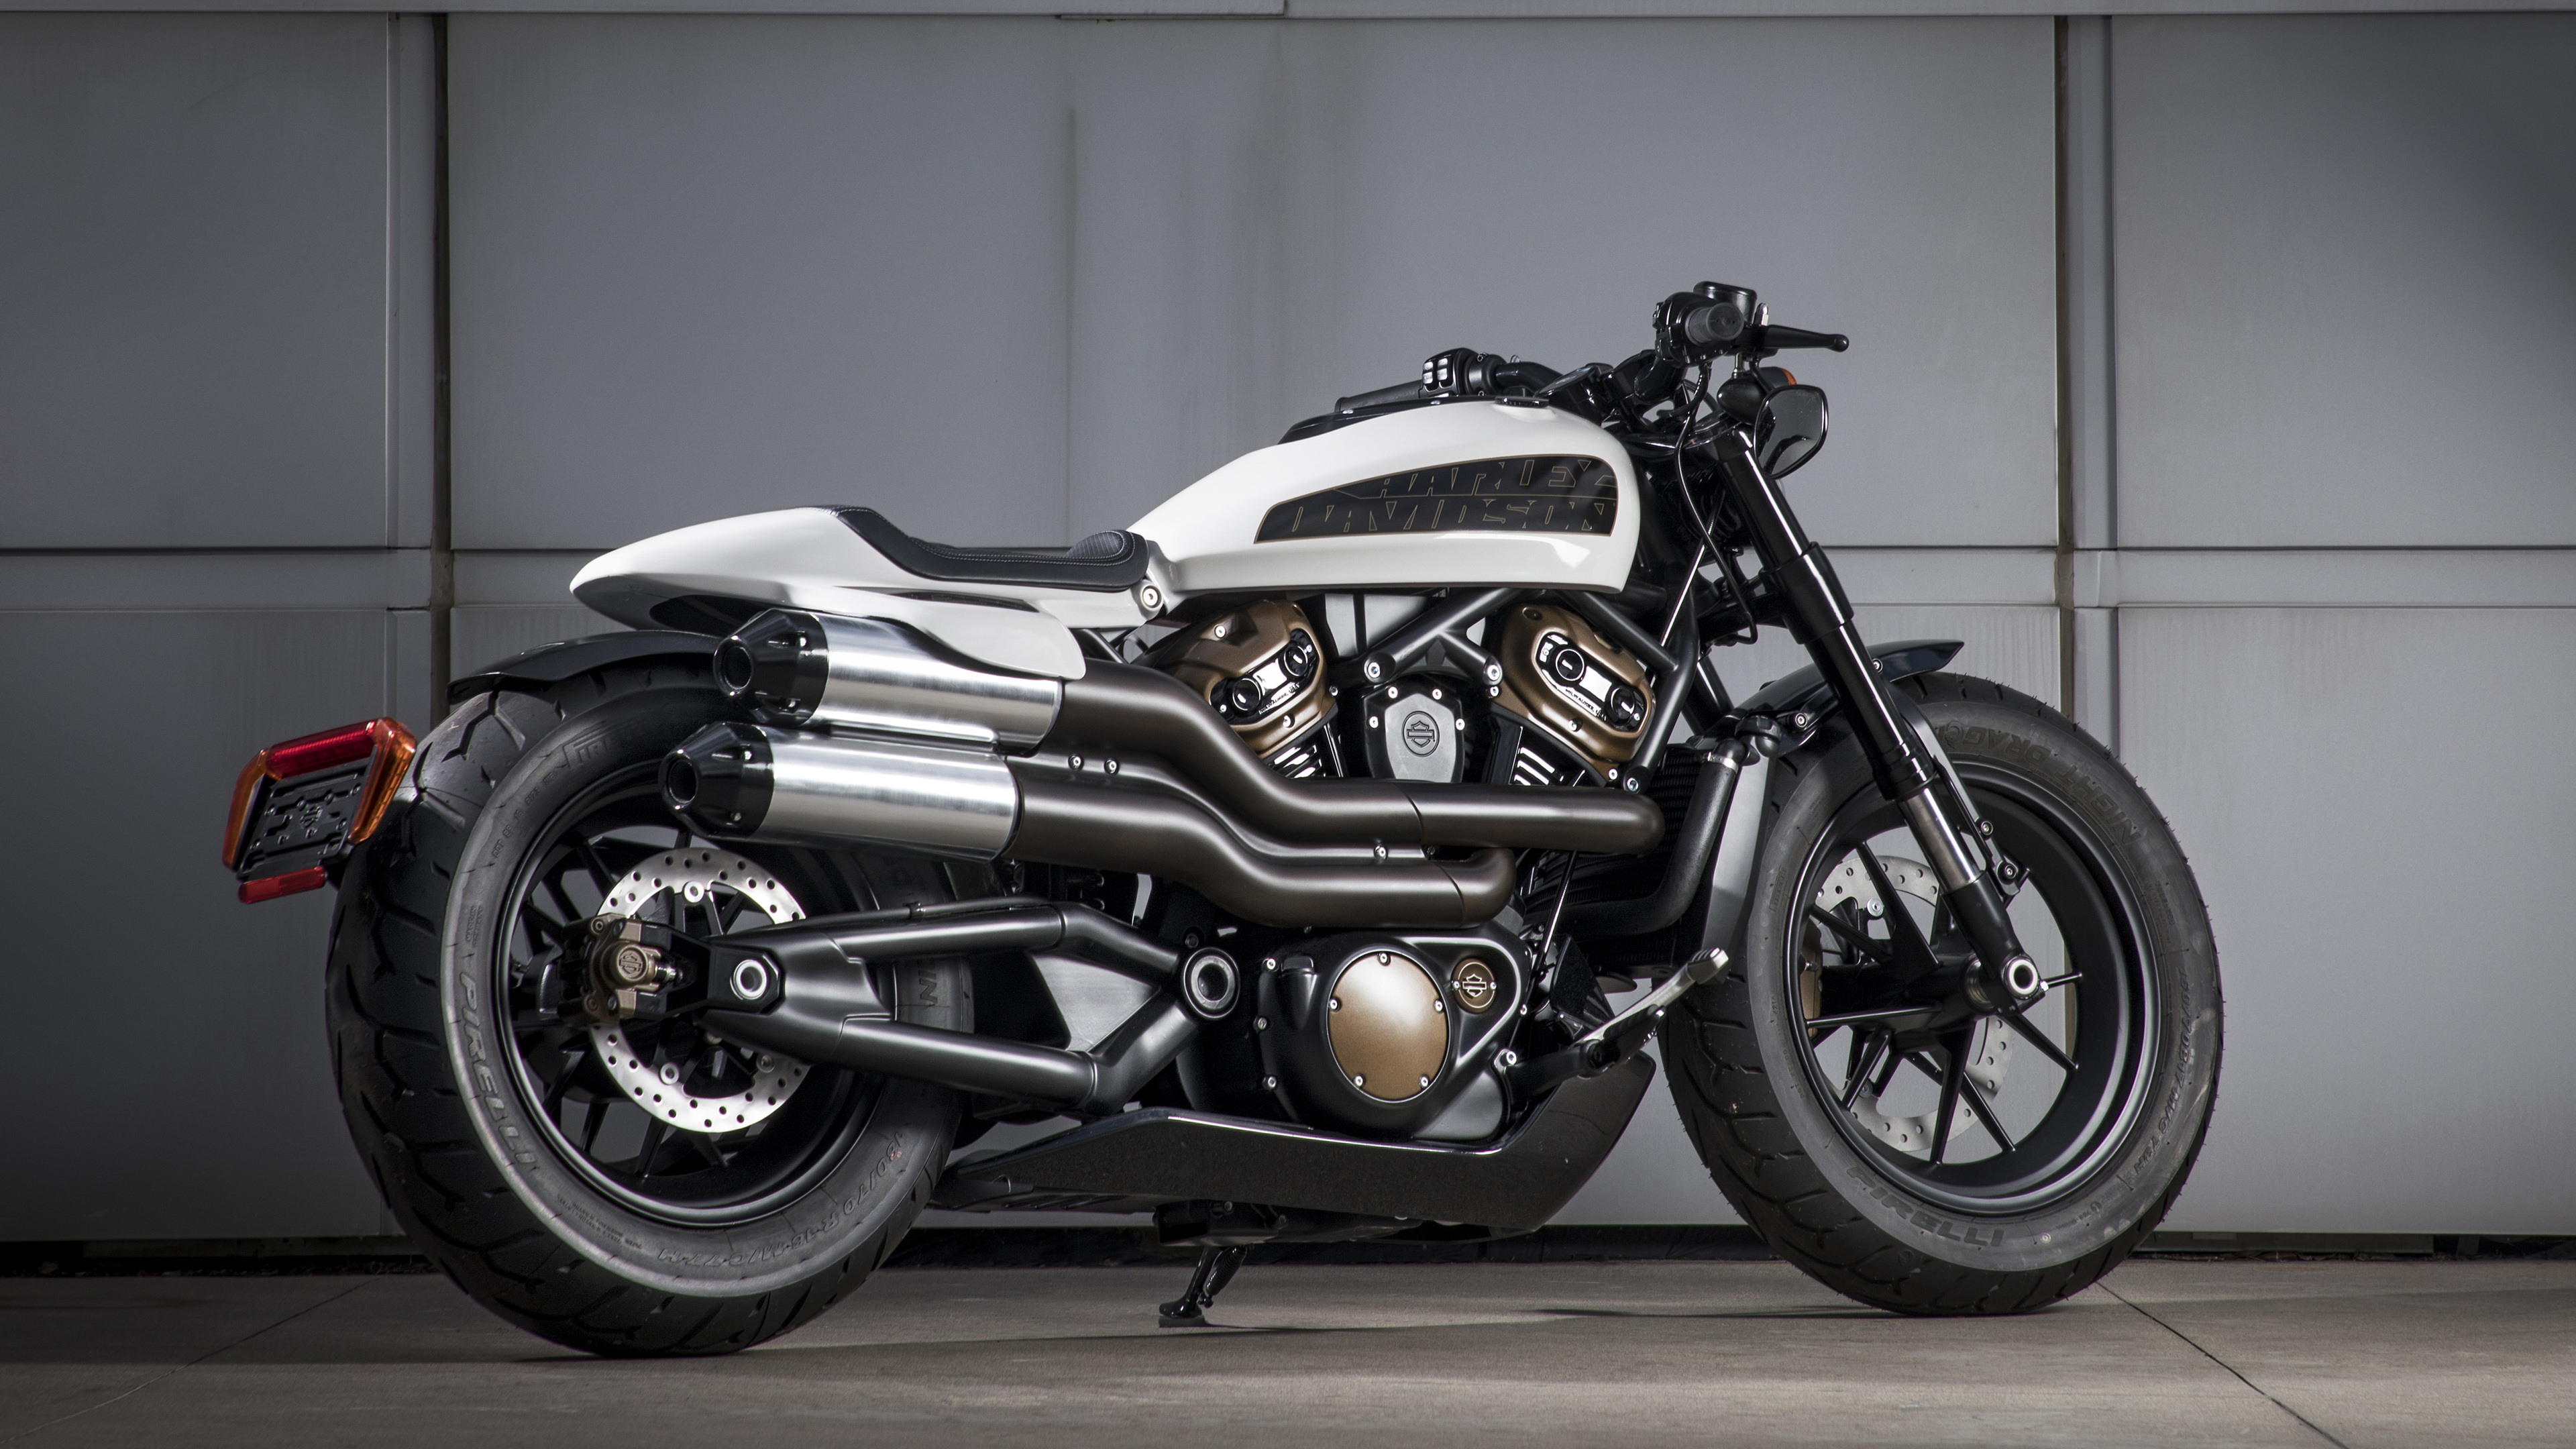 Harley Davidson Custom 1250 2020 - 2020 Harley Davidson Models , HD Wallpaper & Backgrounds